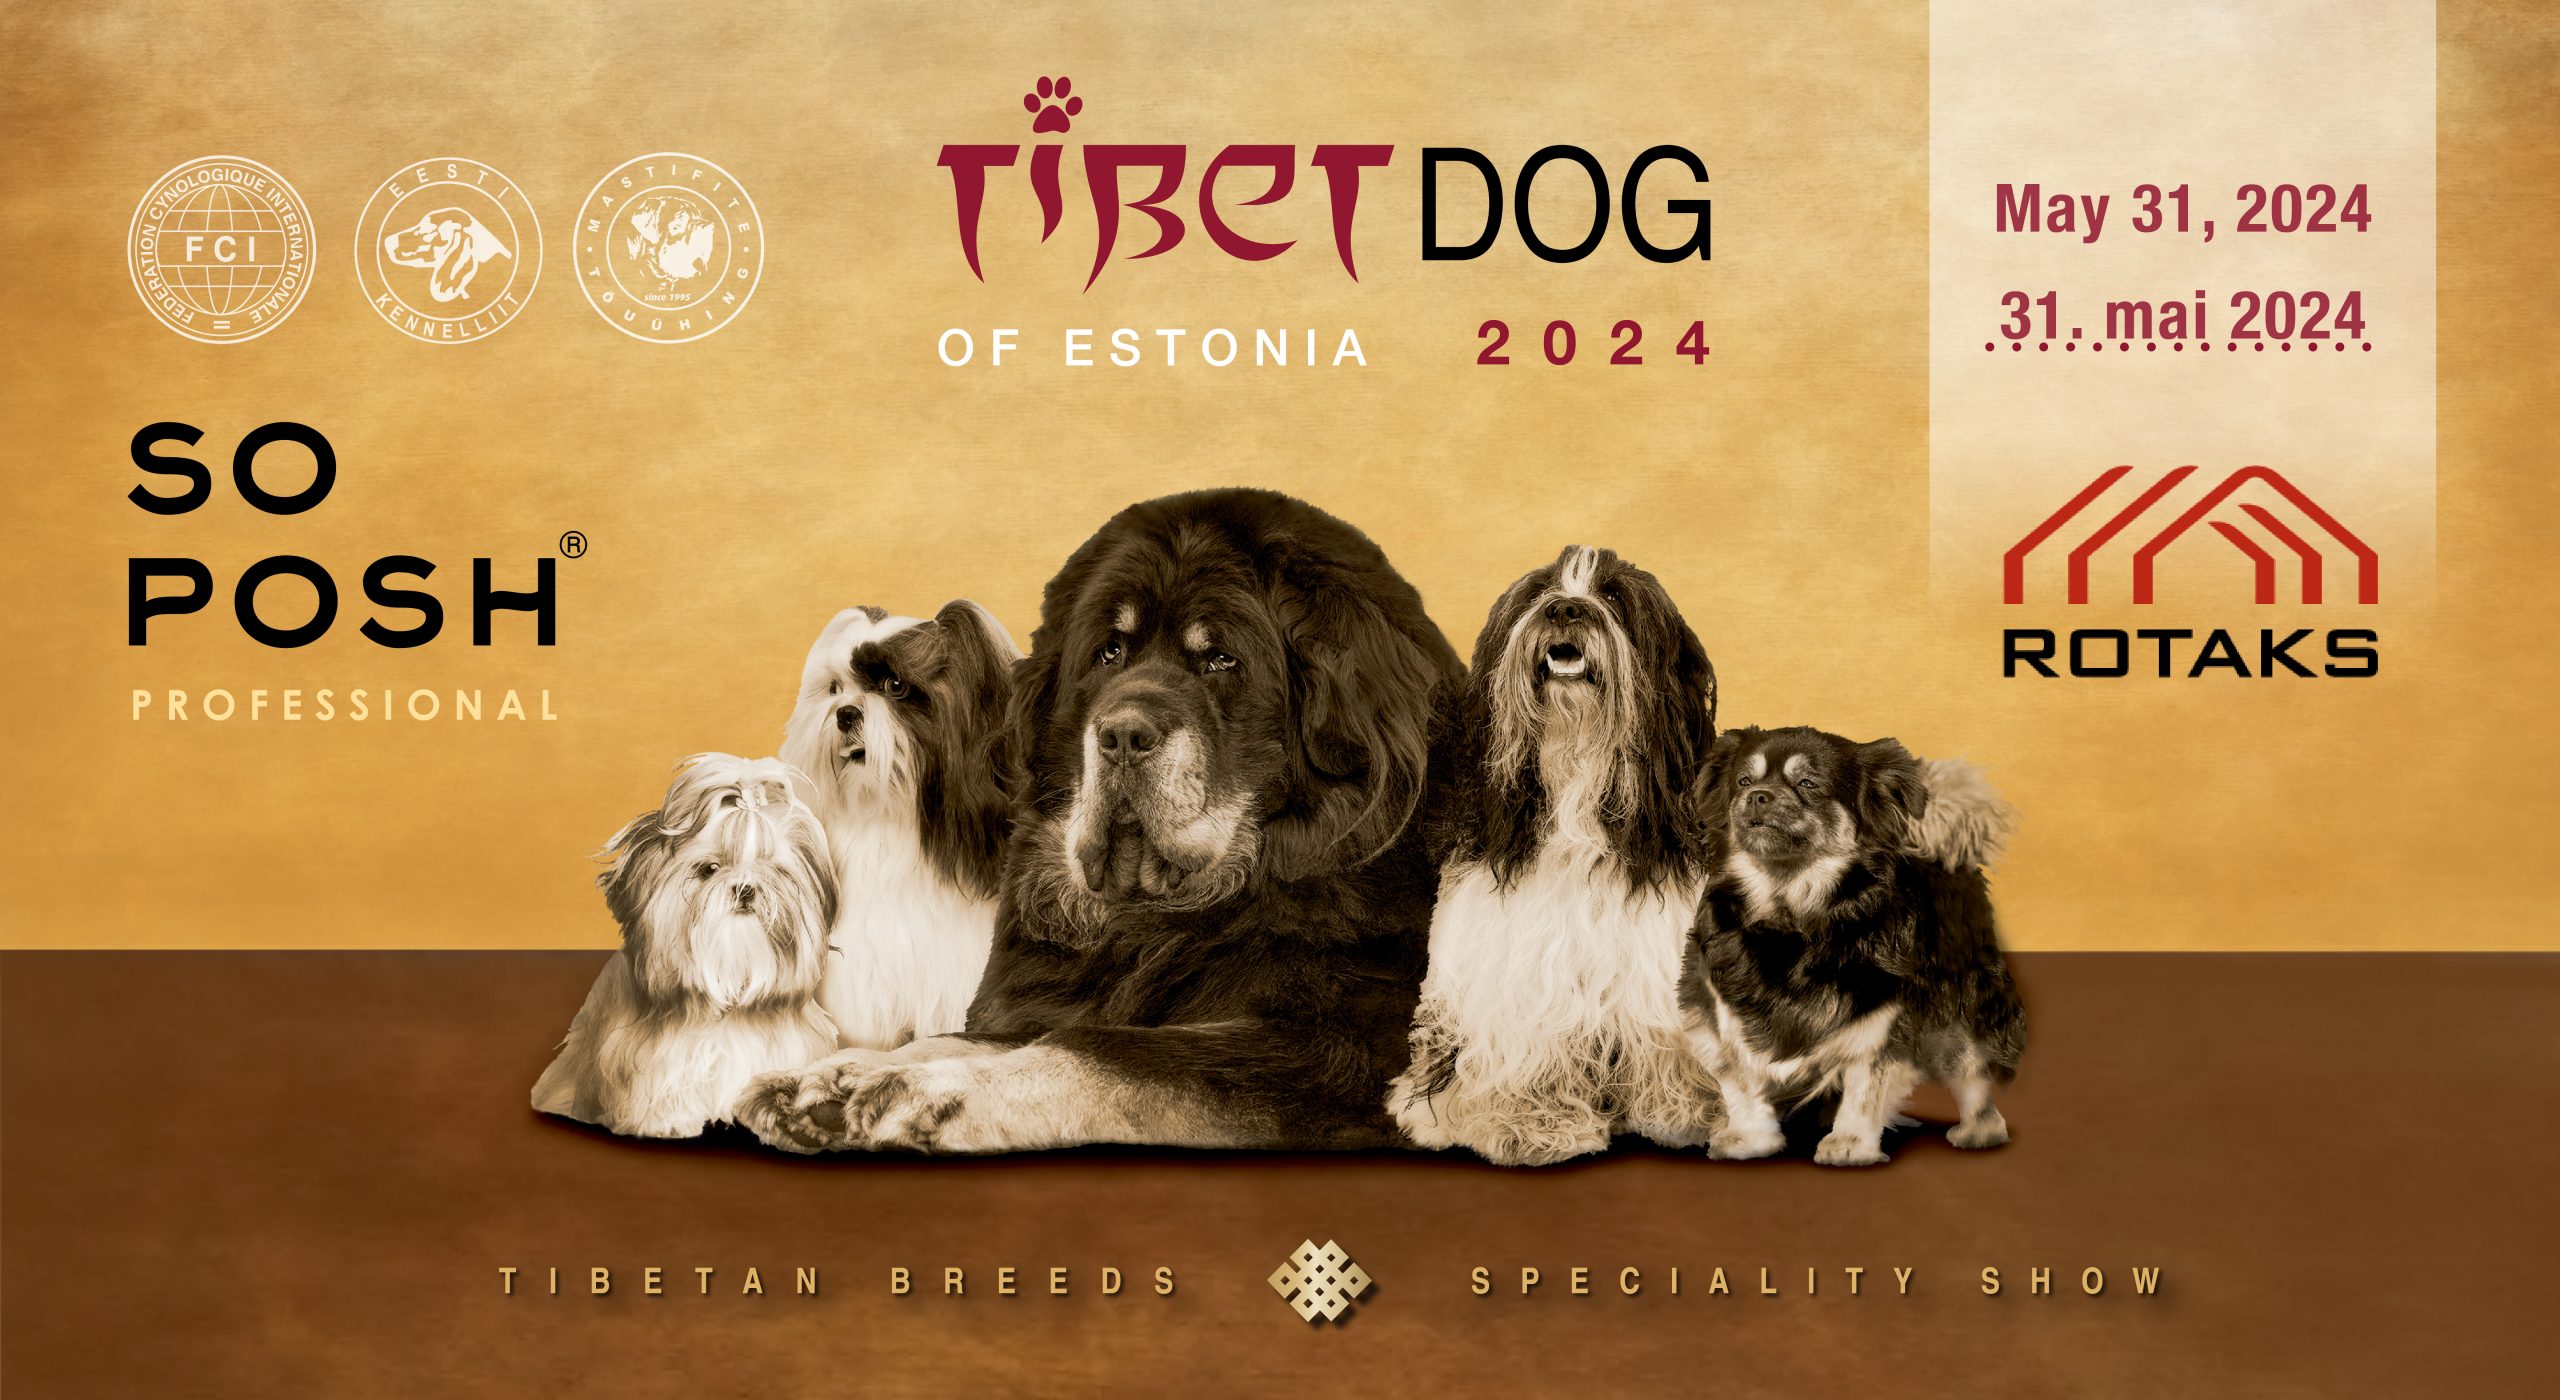 Tibet dog of Estonia 2024